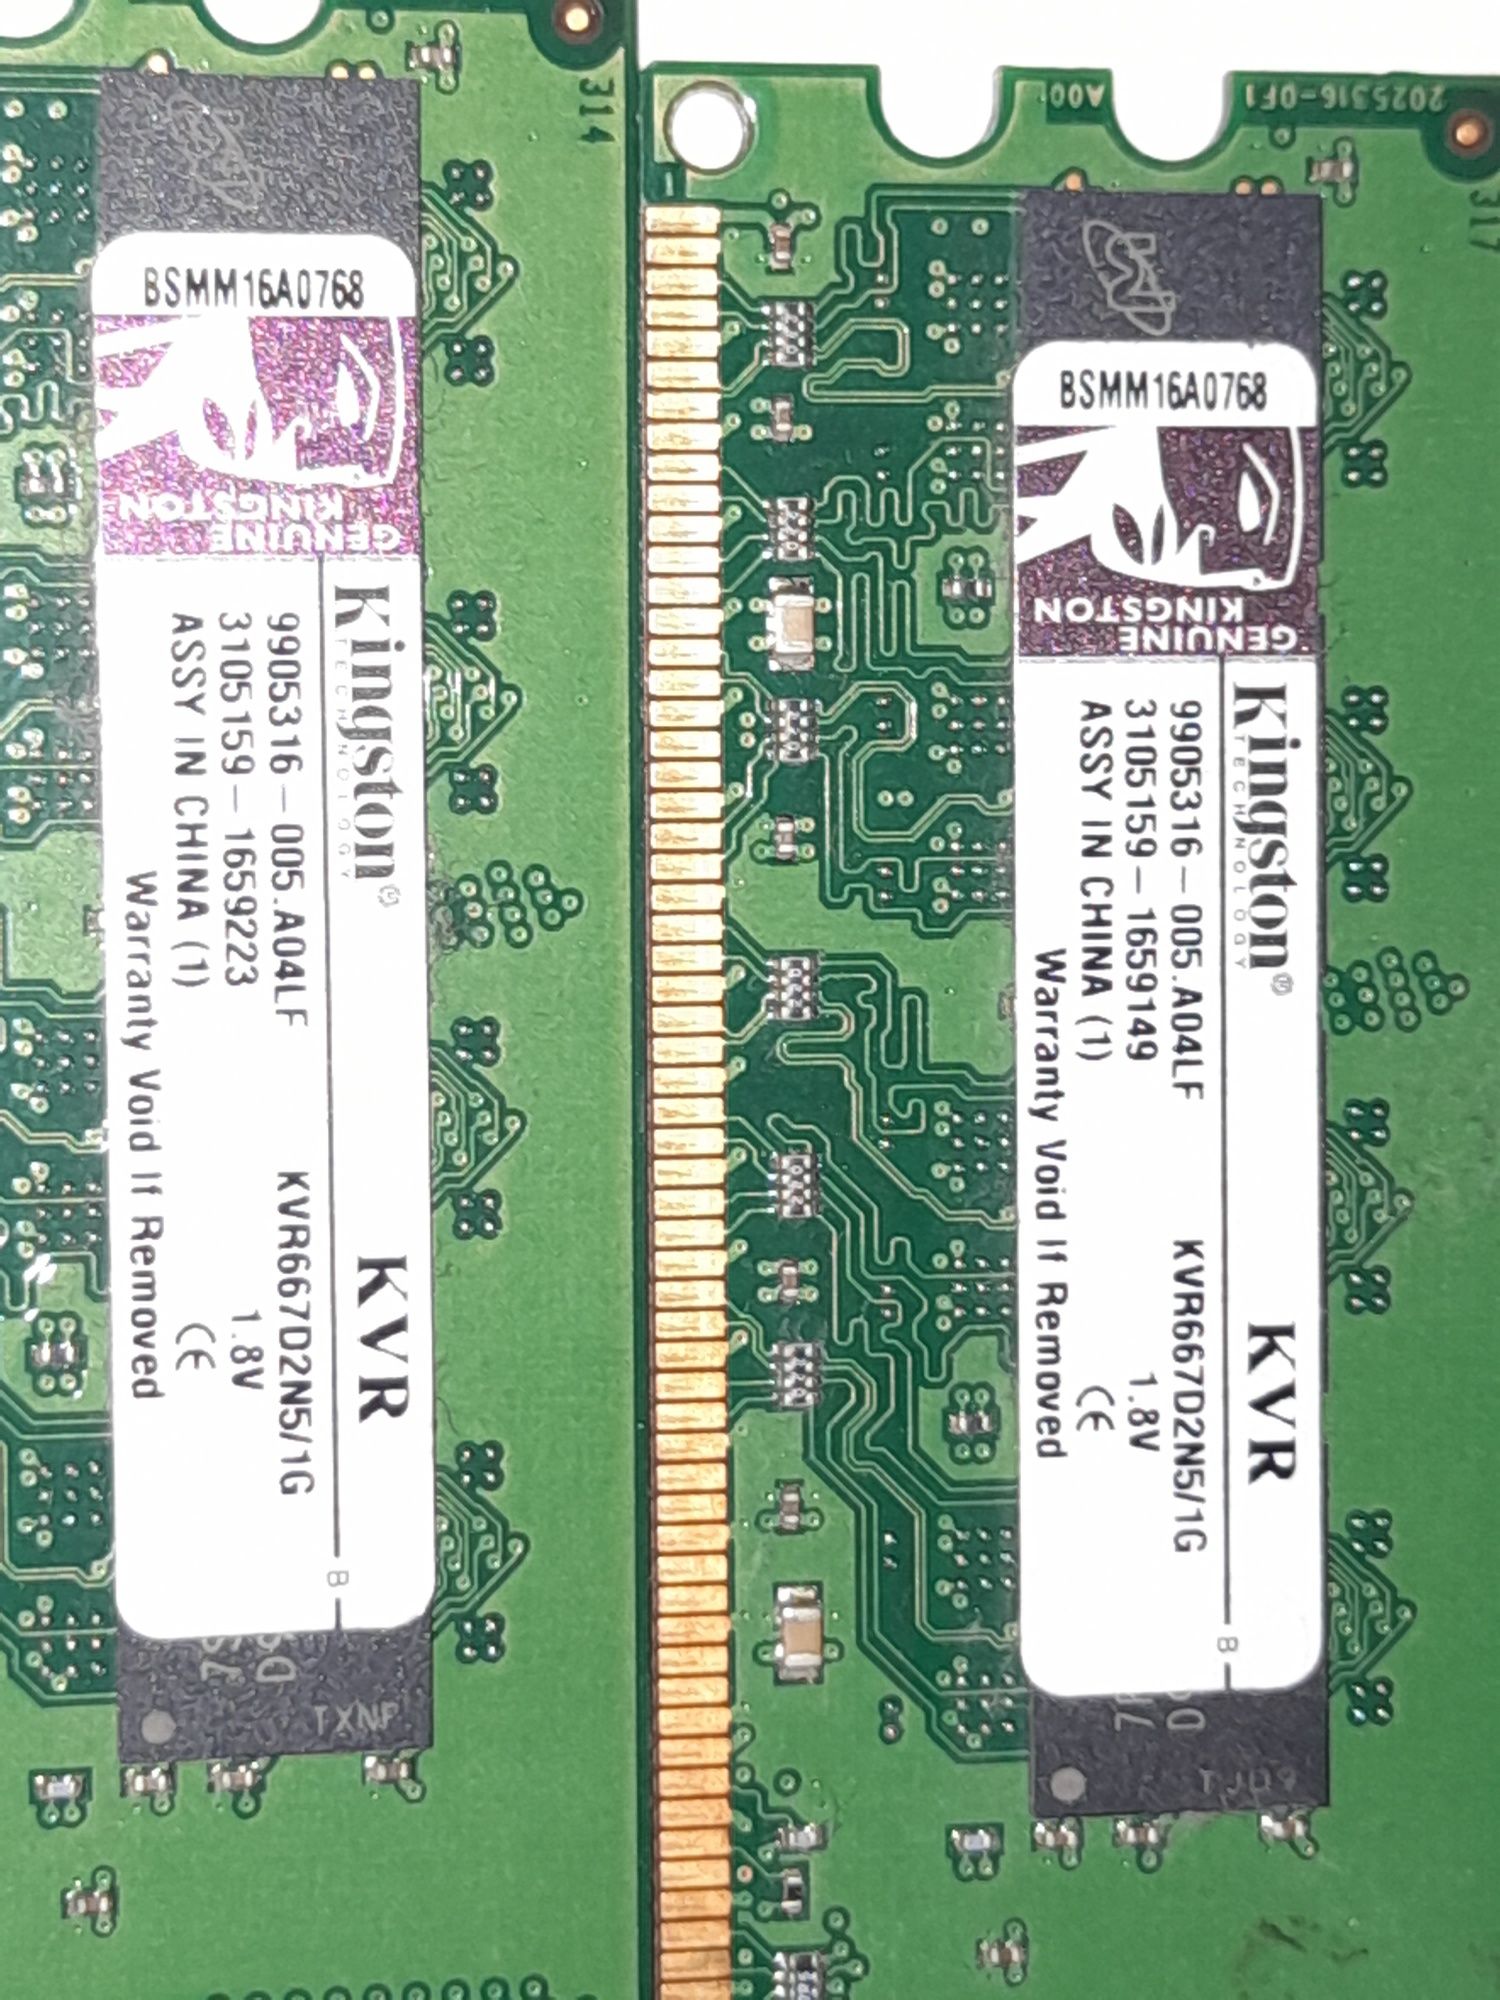 Memorie kingston DDR2 800mhz 1Gb × 2